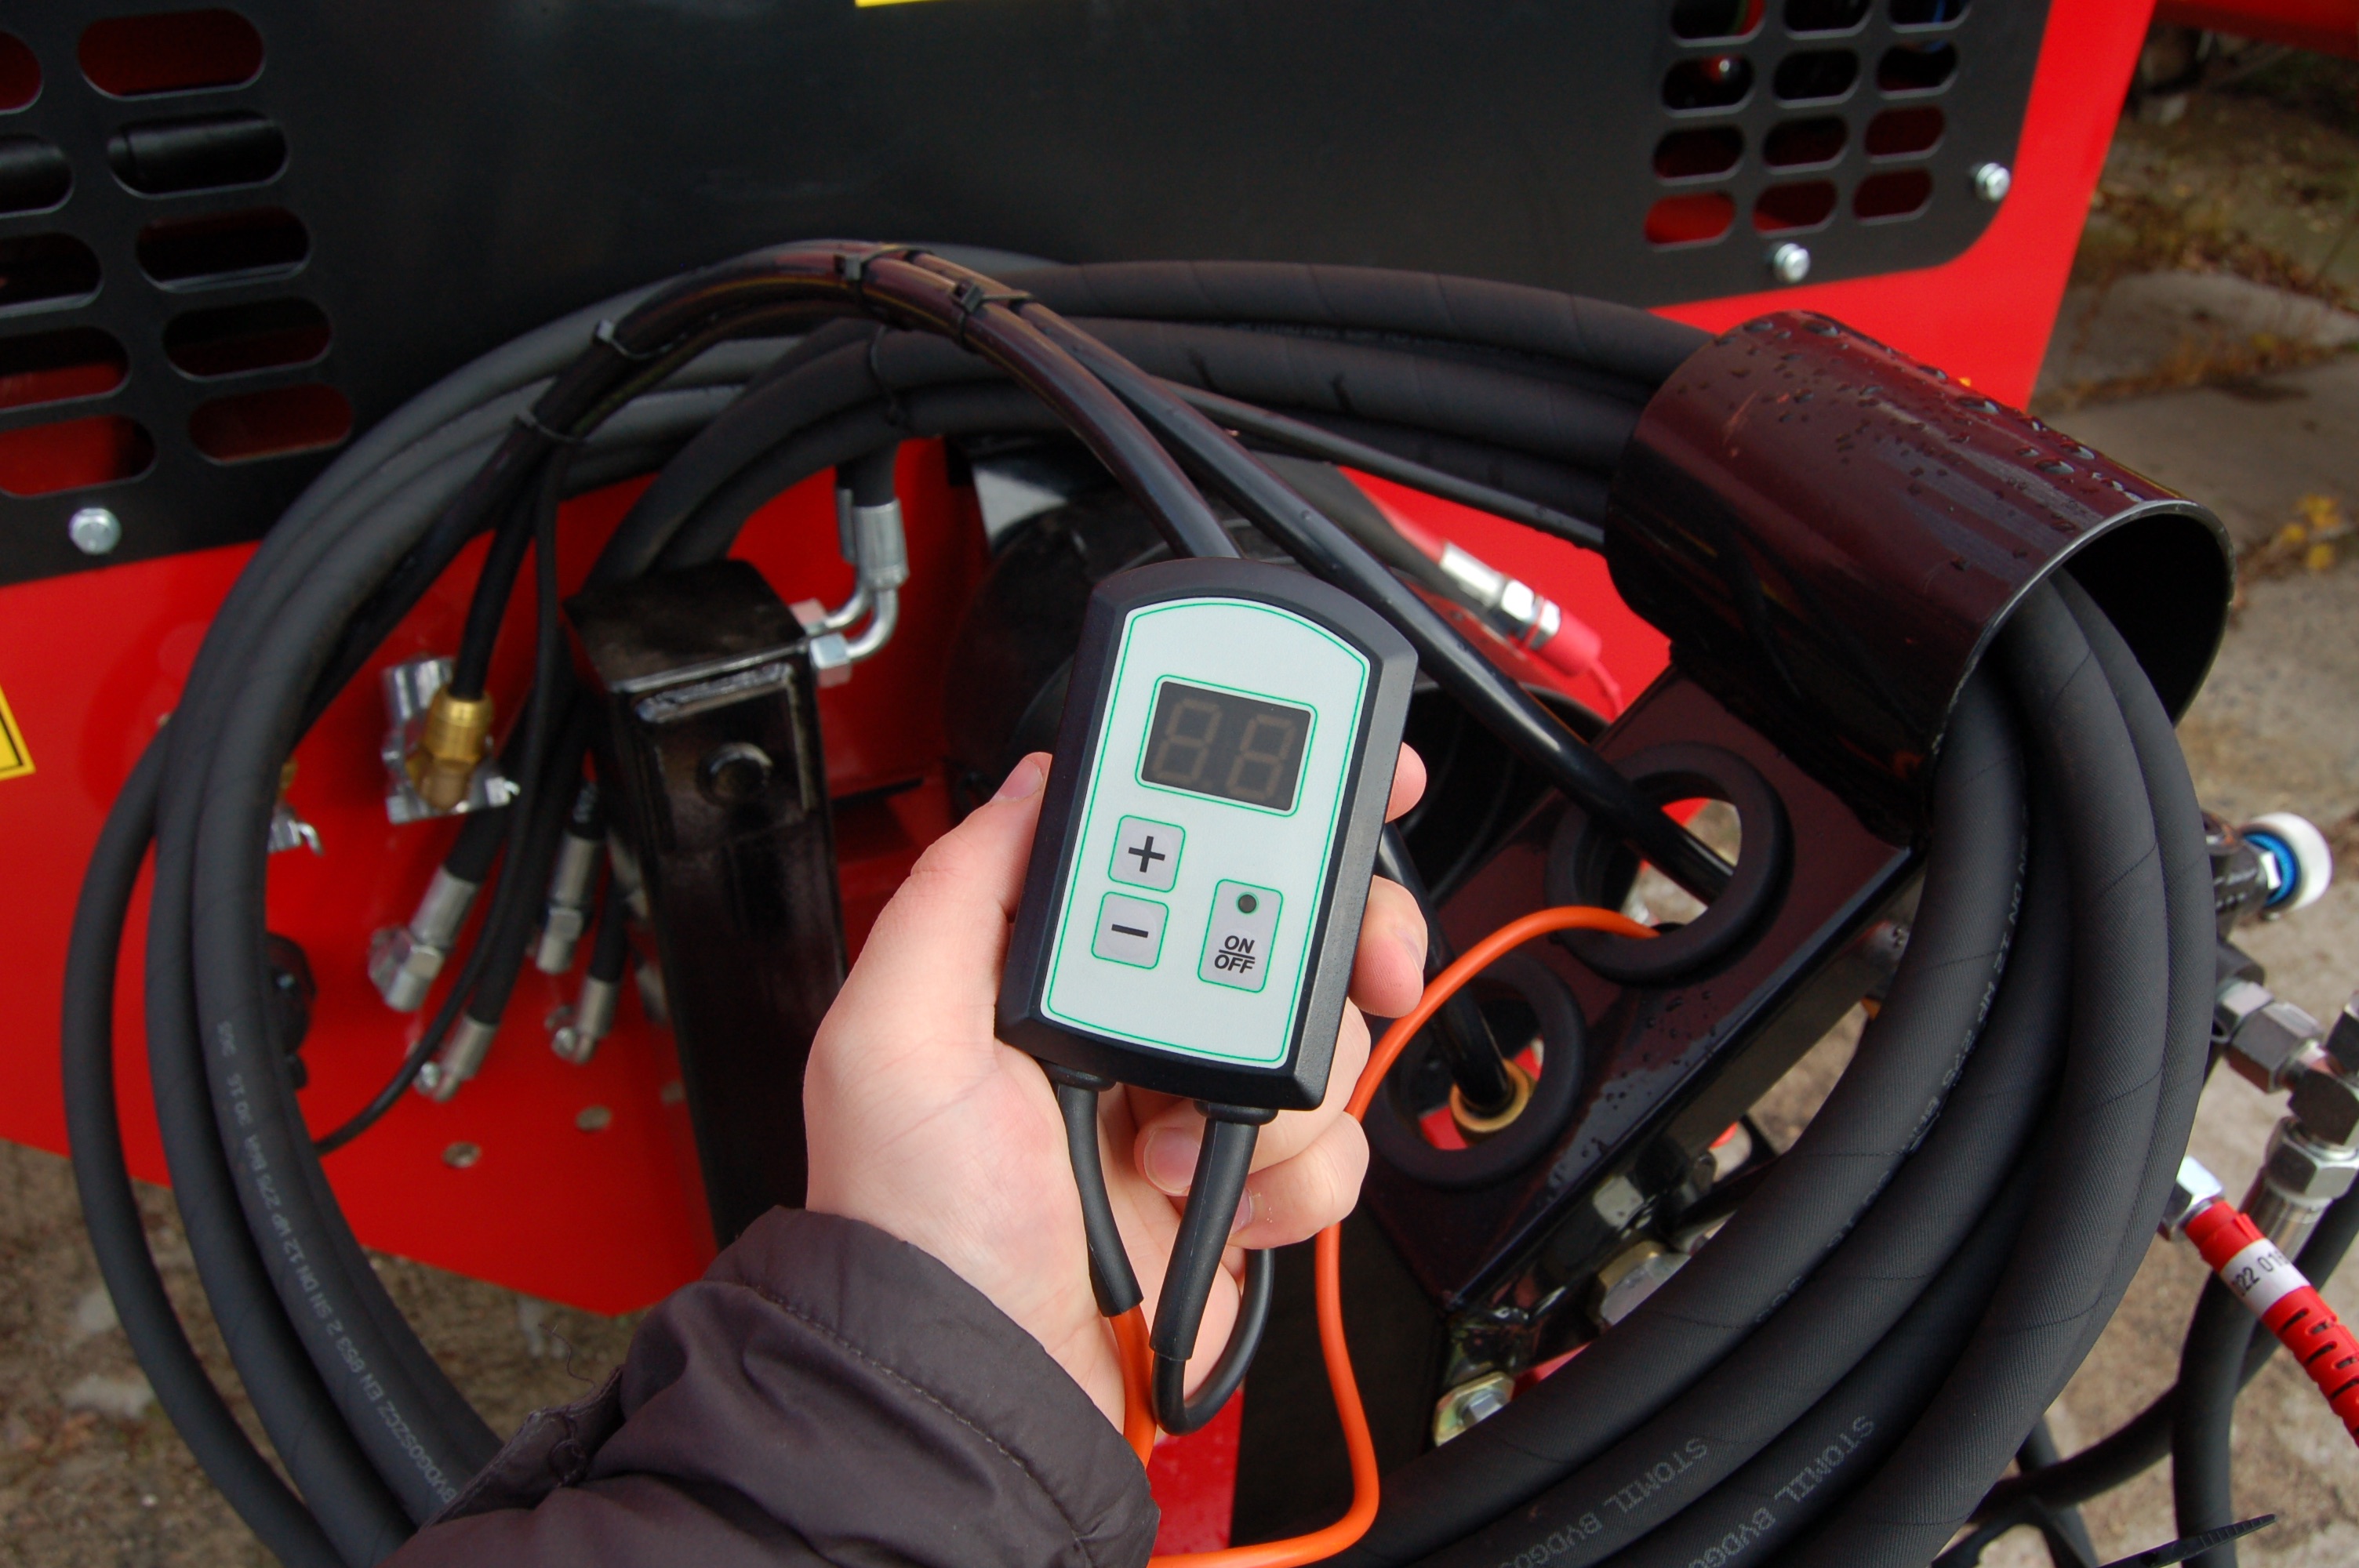 W nowej serii RO do regulowania prędkości posuwu służy elektroniczny sterownik umieszczany w kabinie ciągnika.